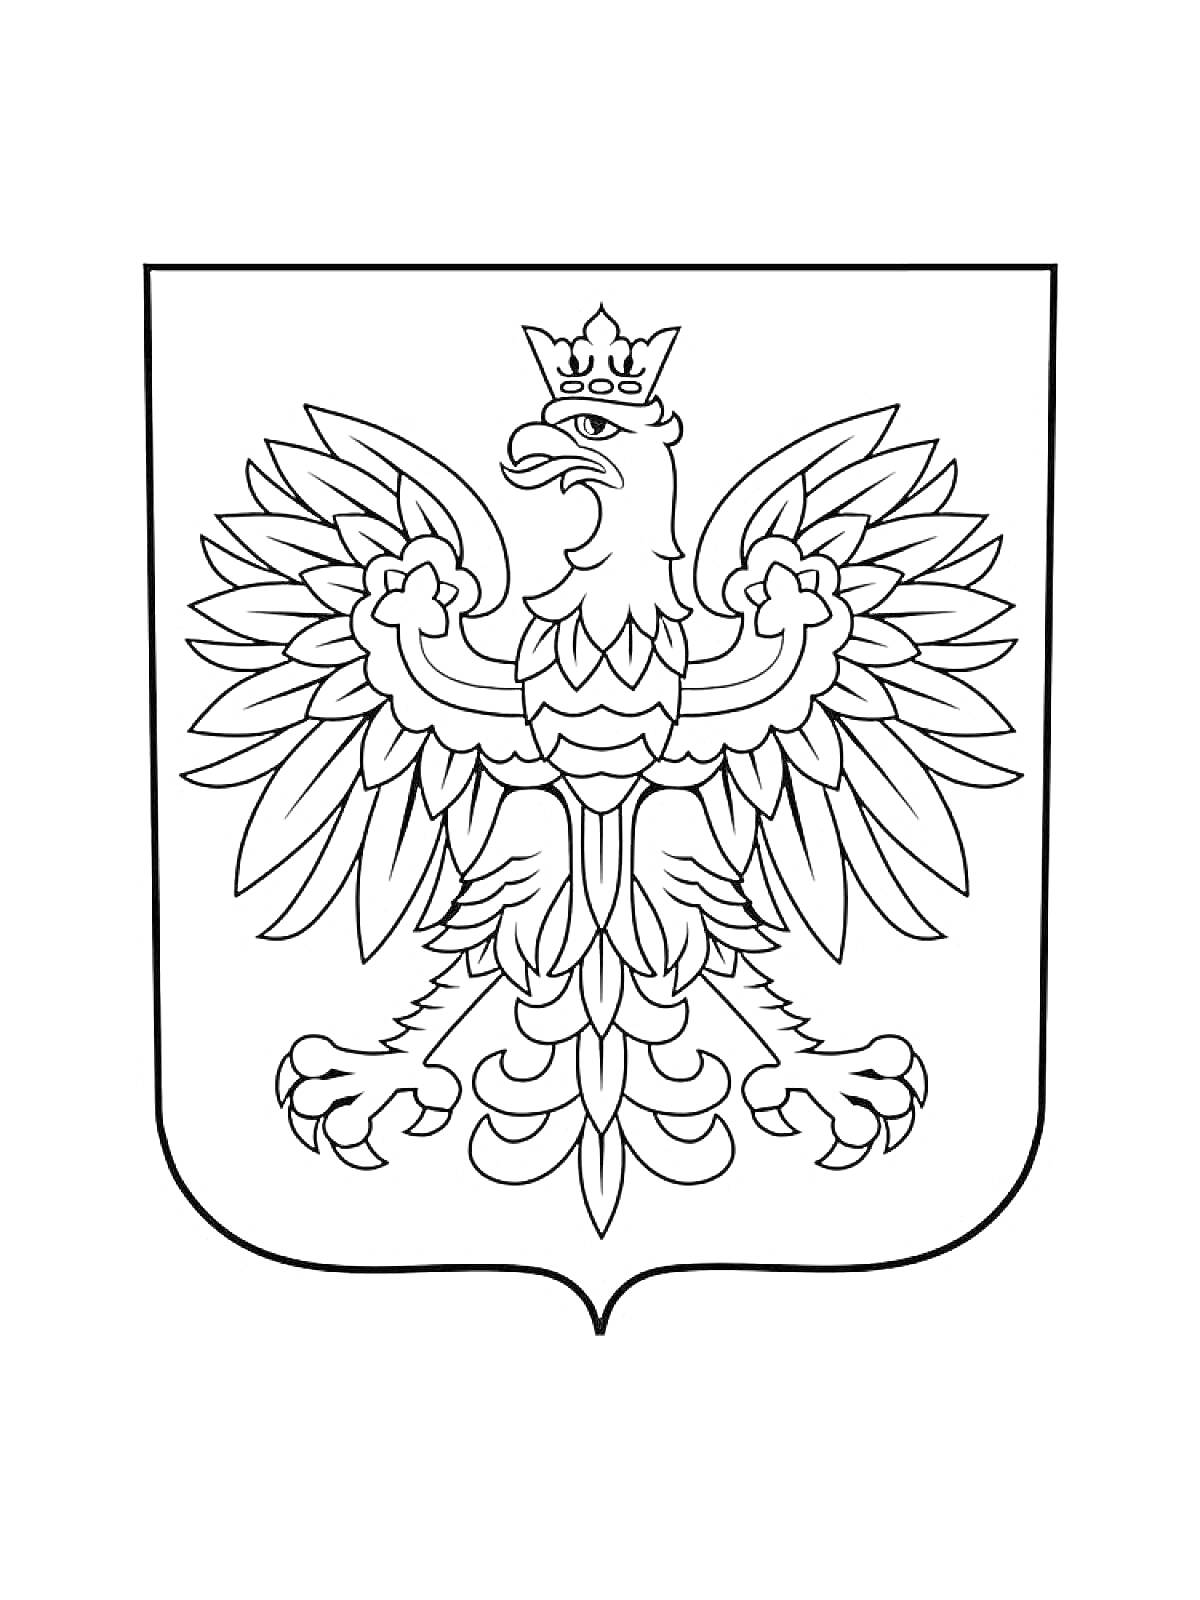 Раскраска Герб с изображением орла в короне с распростертыми крыльями